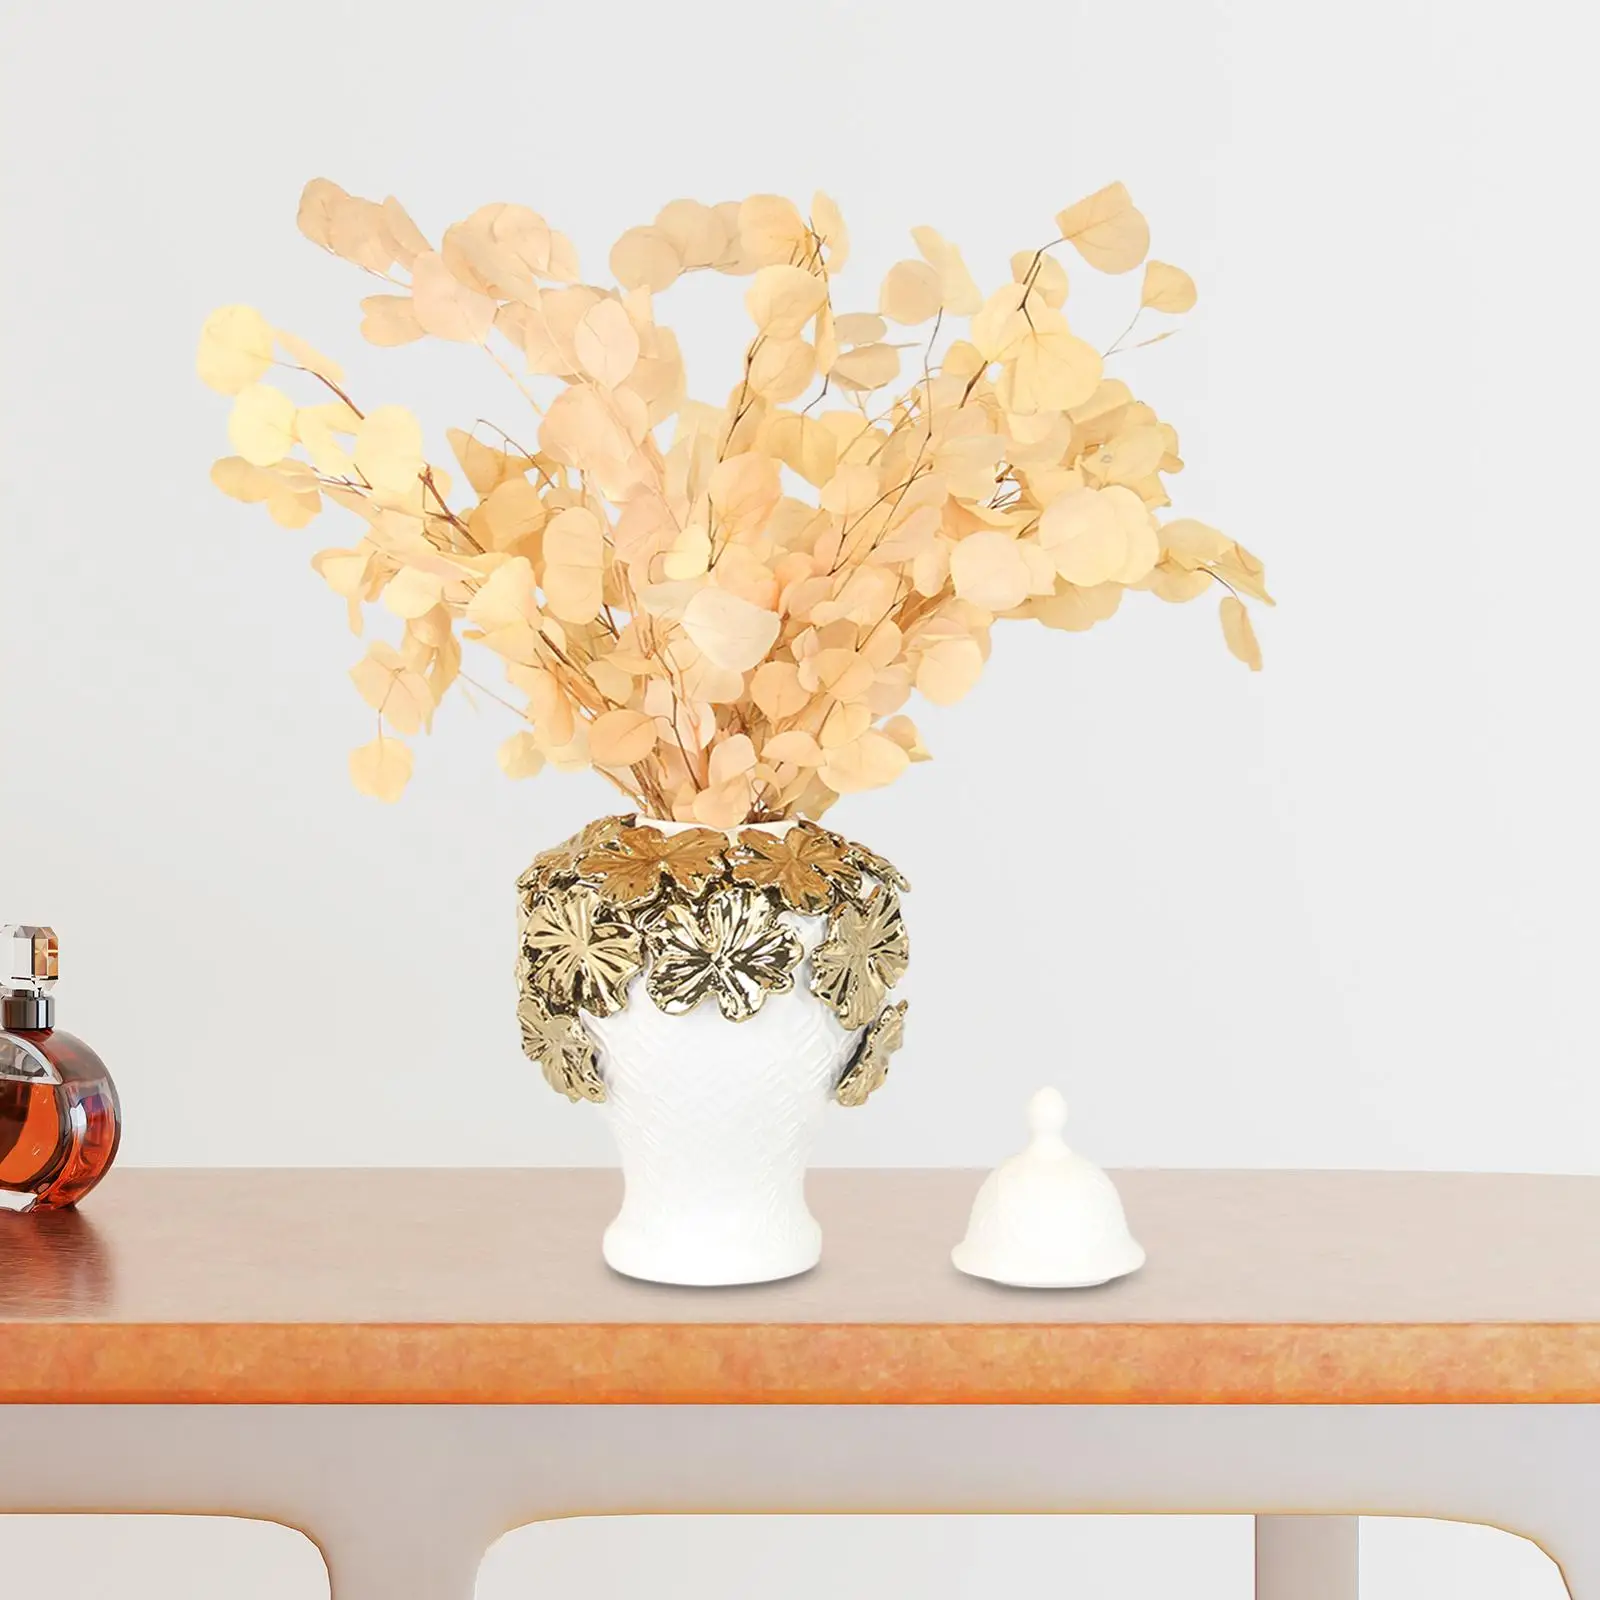 Ceramic Flower Vases Gifts Display Floral Arrangement Decoration Porcelain Ginger Jars for Wedding Fireplace Bedroom Home